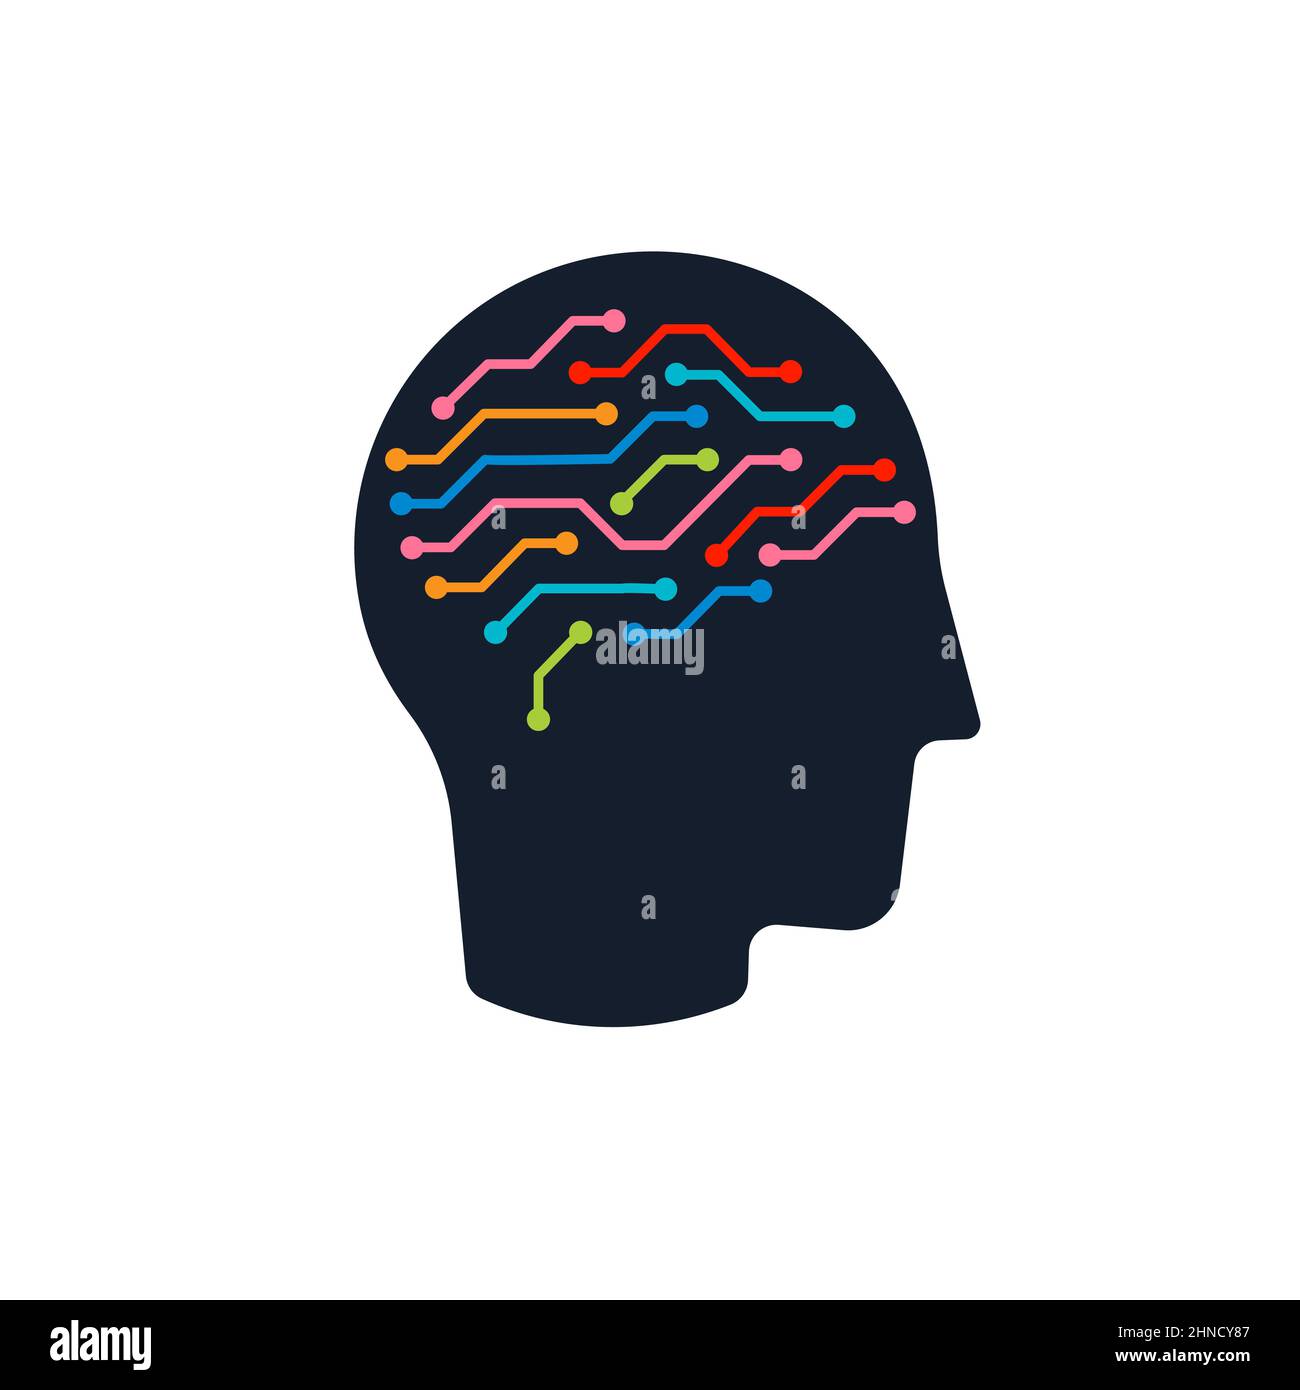 Gehirn Gesundheit und intelligente Bildung Logo Konzept Flachkopf-Symbol. Gesichtsprofil Vektor-Logo für Apotheke, Bildung, Medizin-Logo. Vektorgrafik Stock Vektor